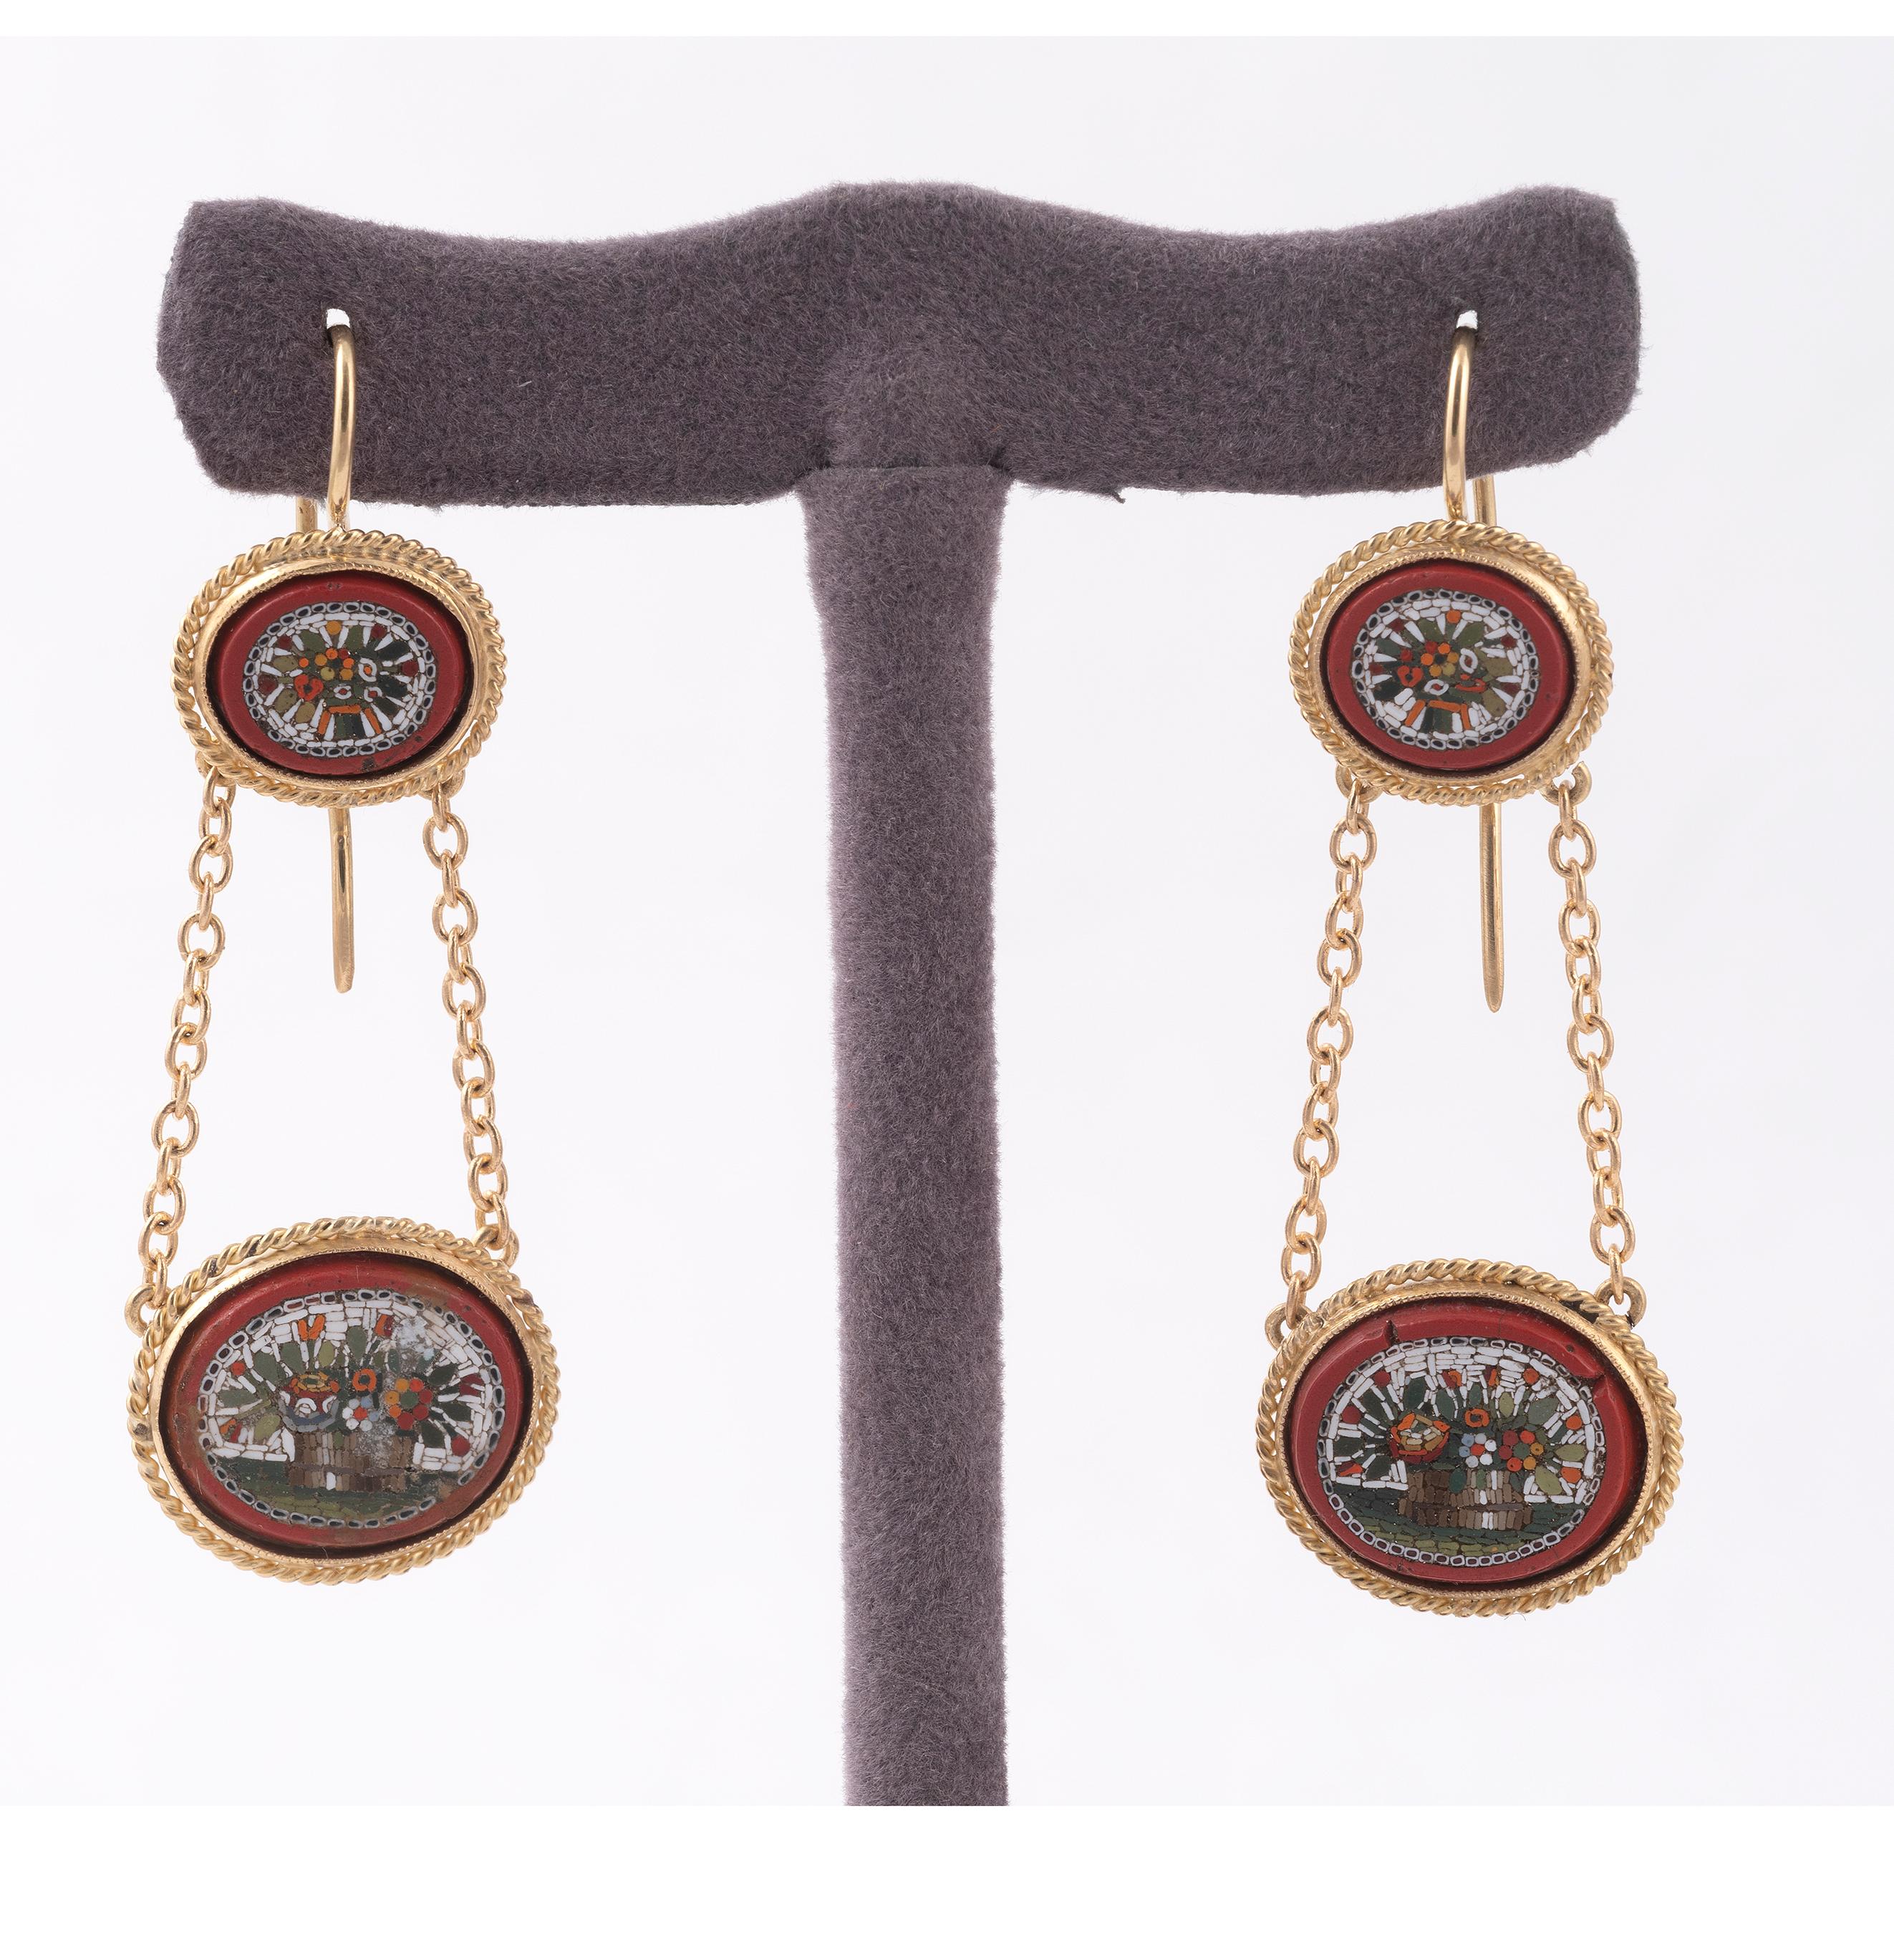 1860s earrings